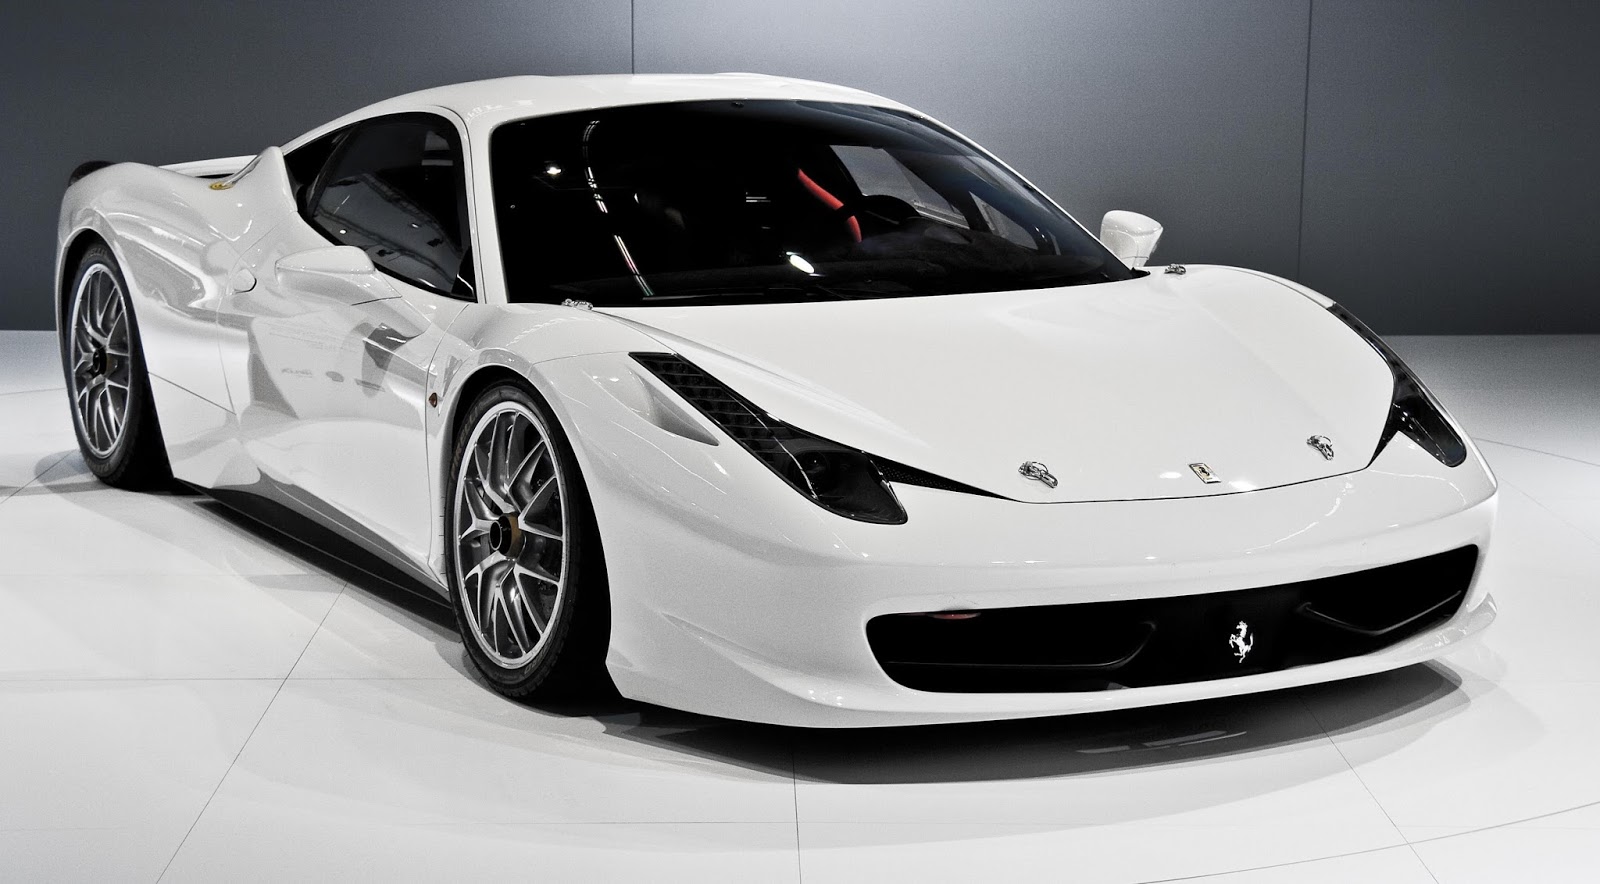 Gambar Mobil Ferrari Warna Putih